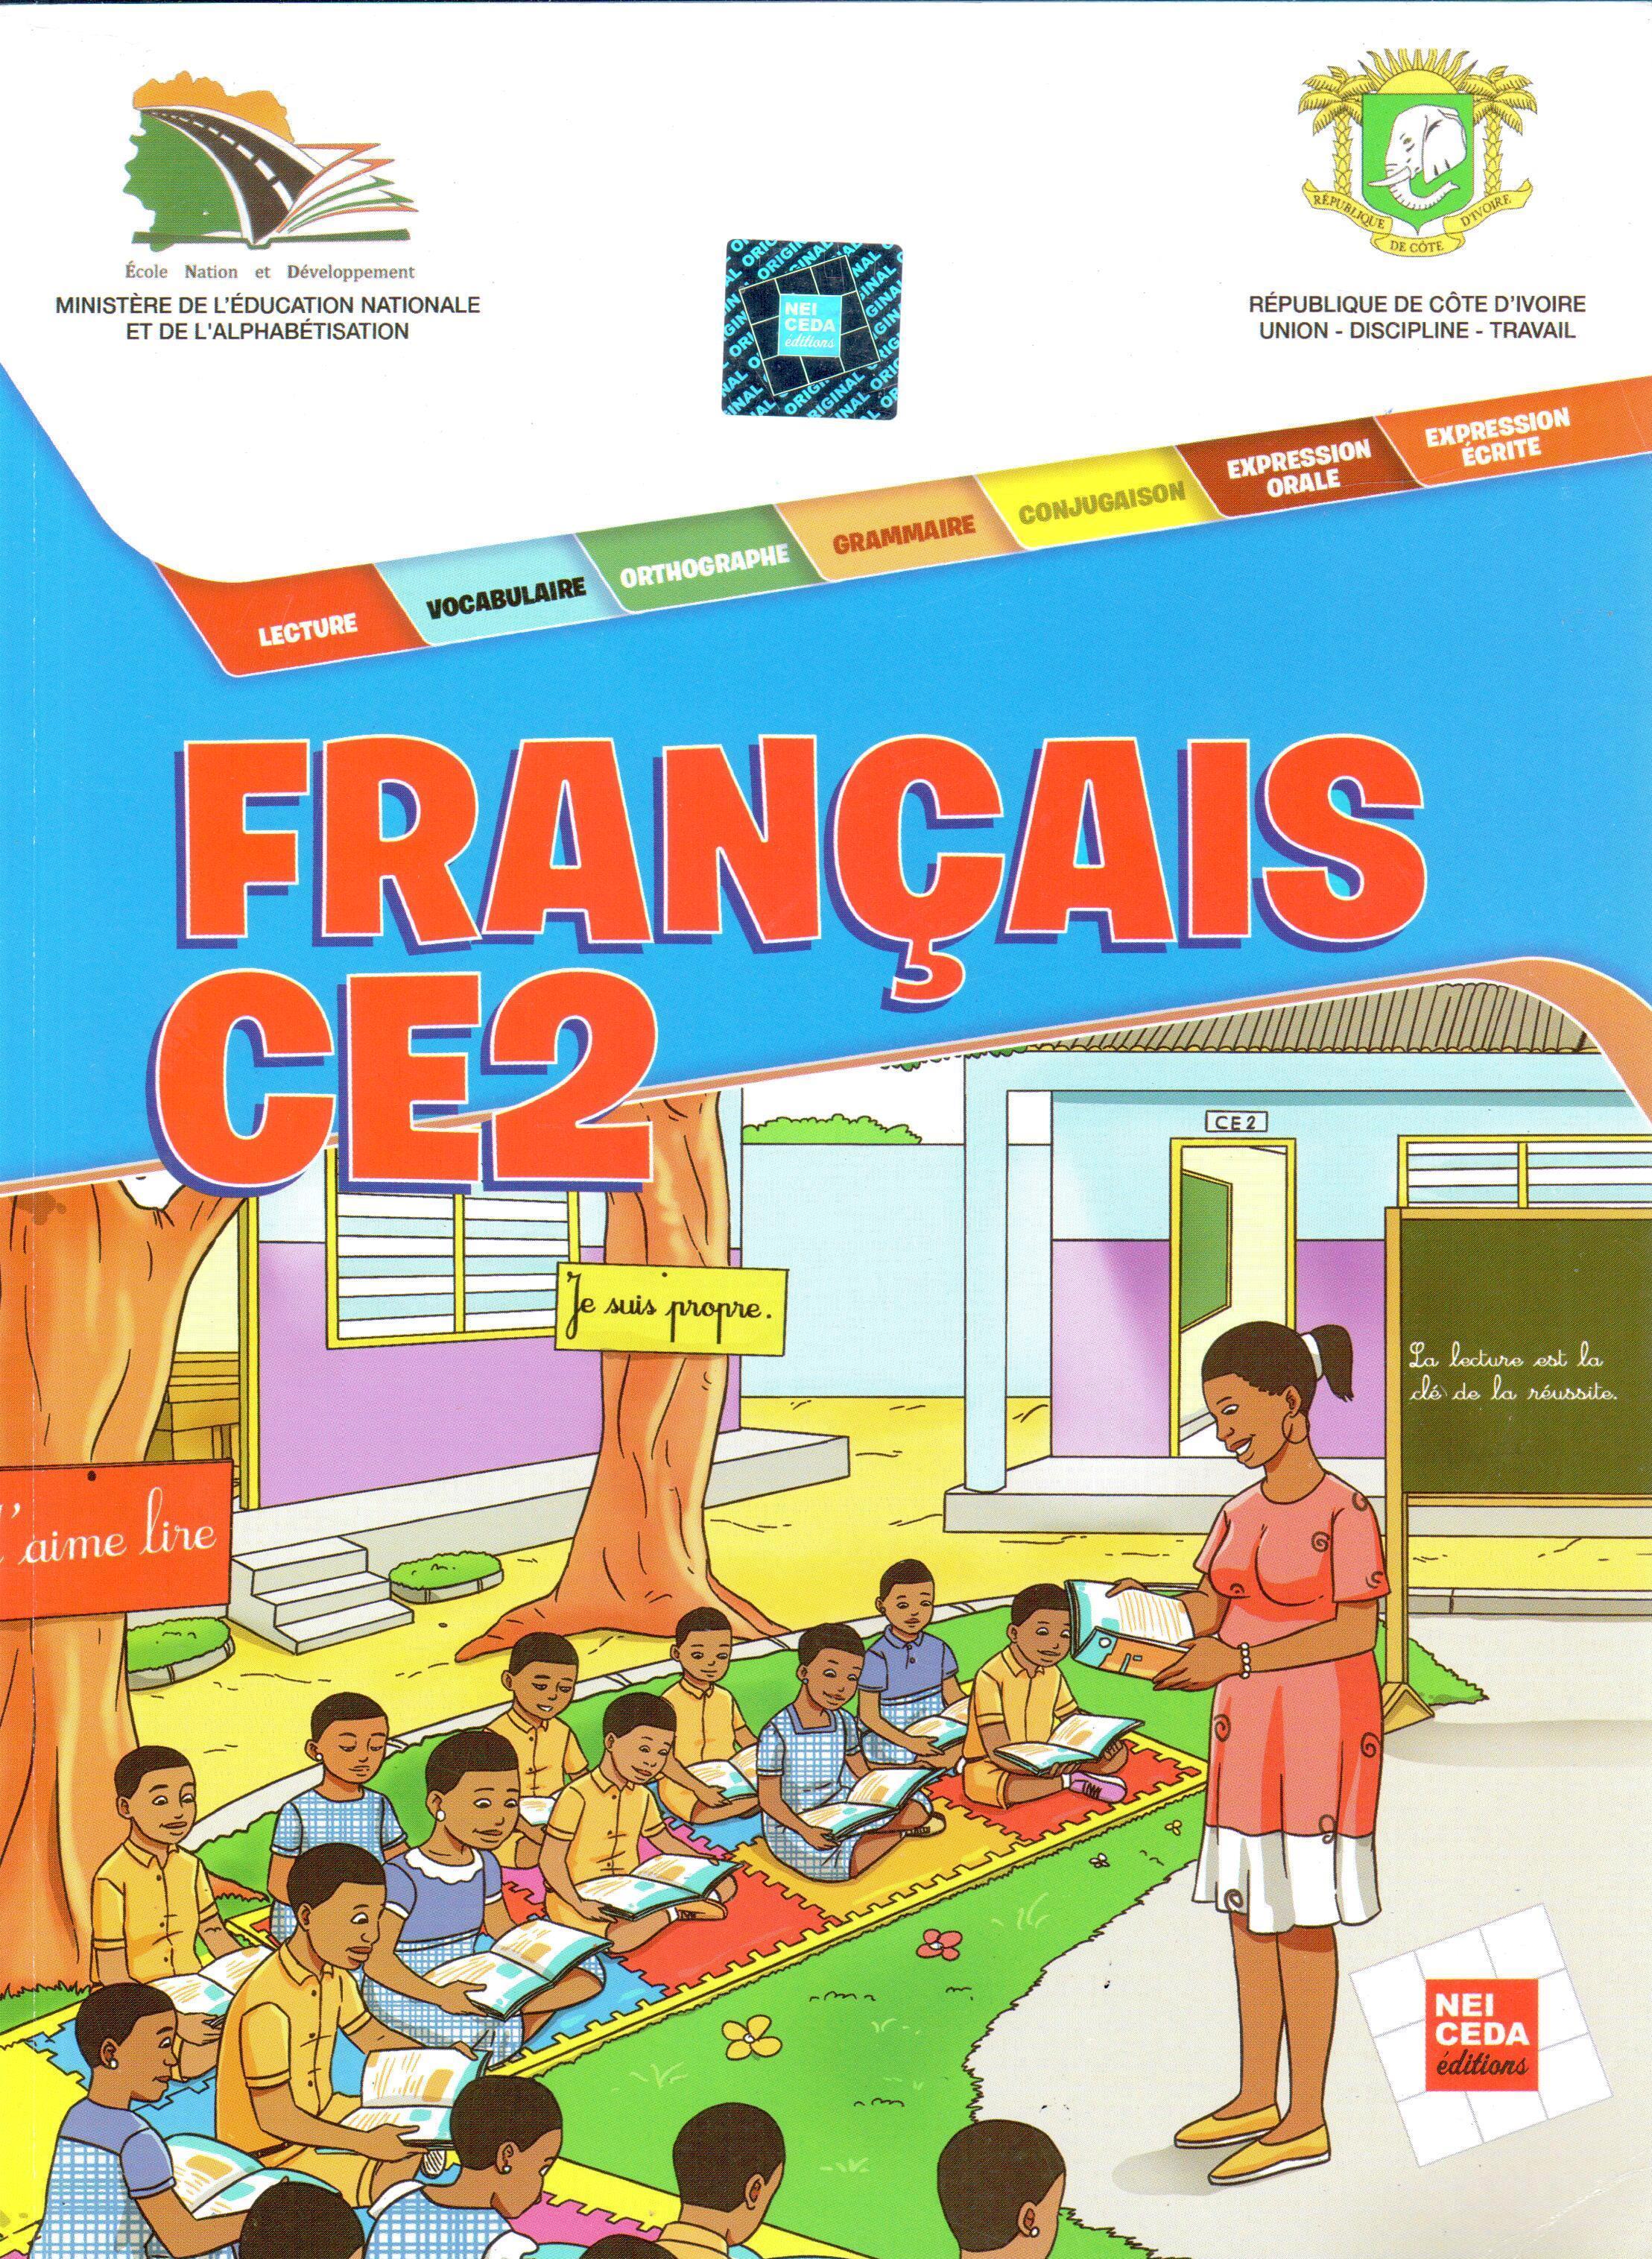 Français CE2 - Ecole et Nation